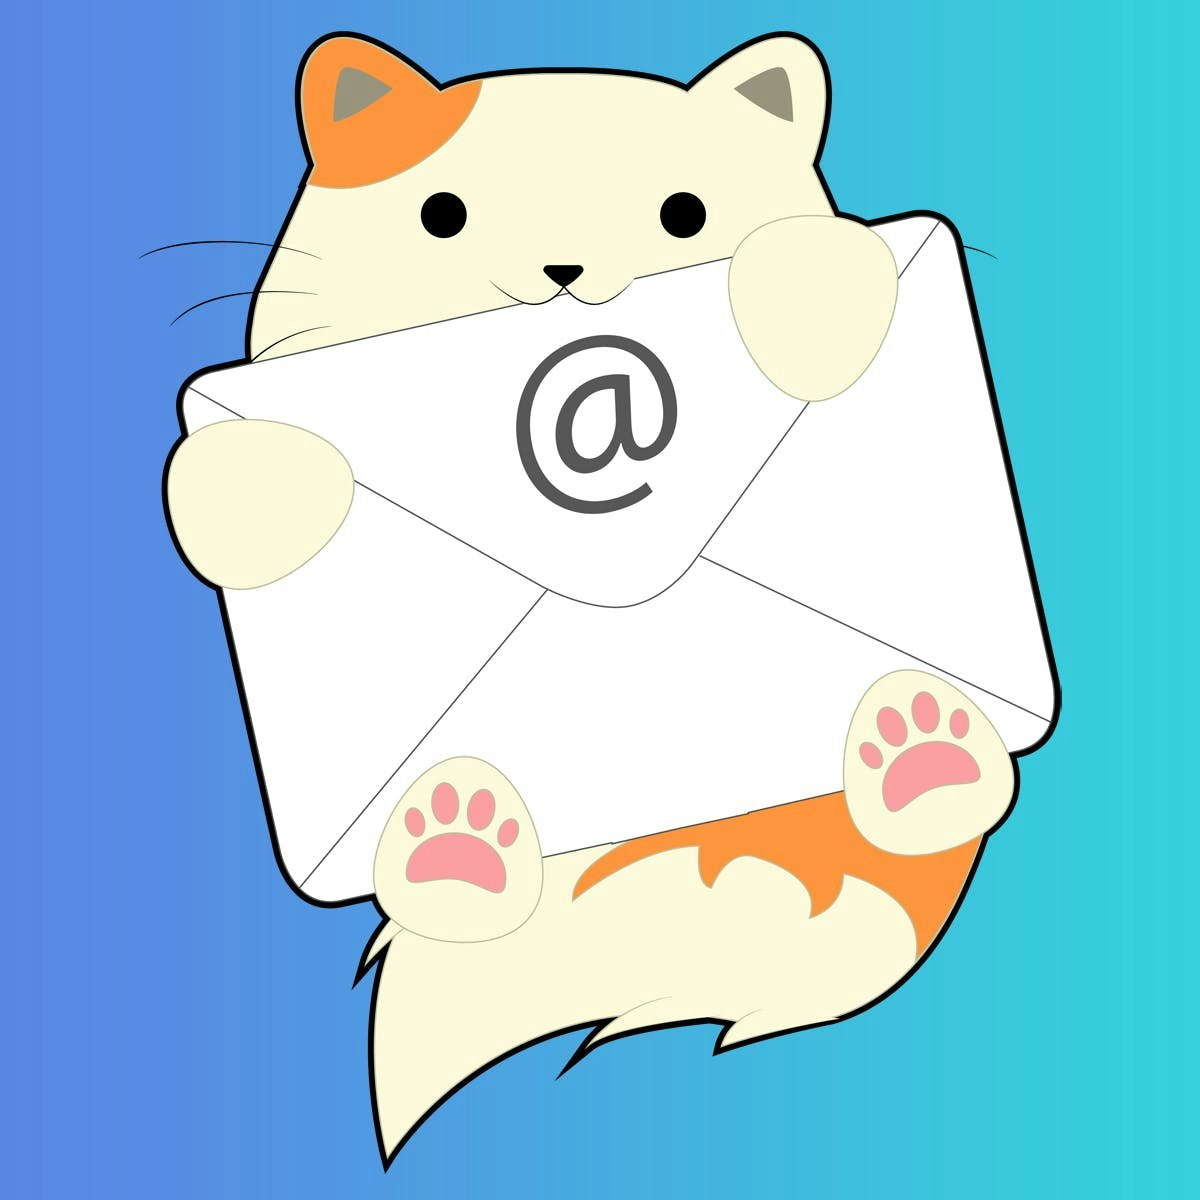 InboxKitten